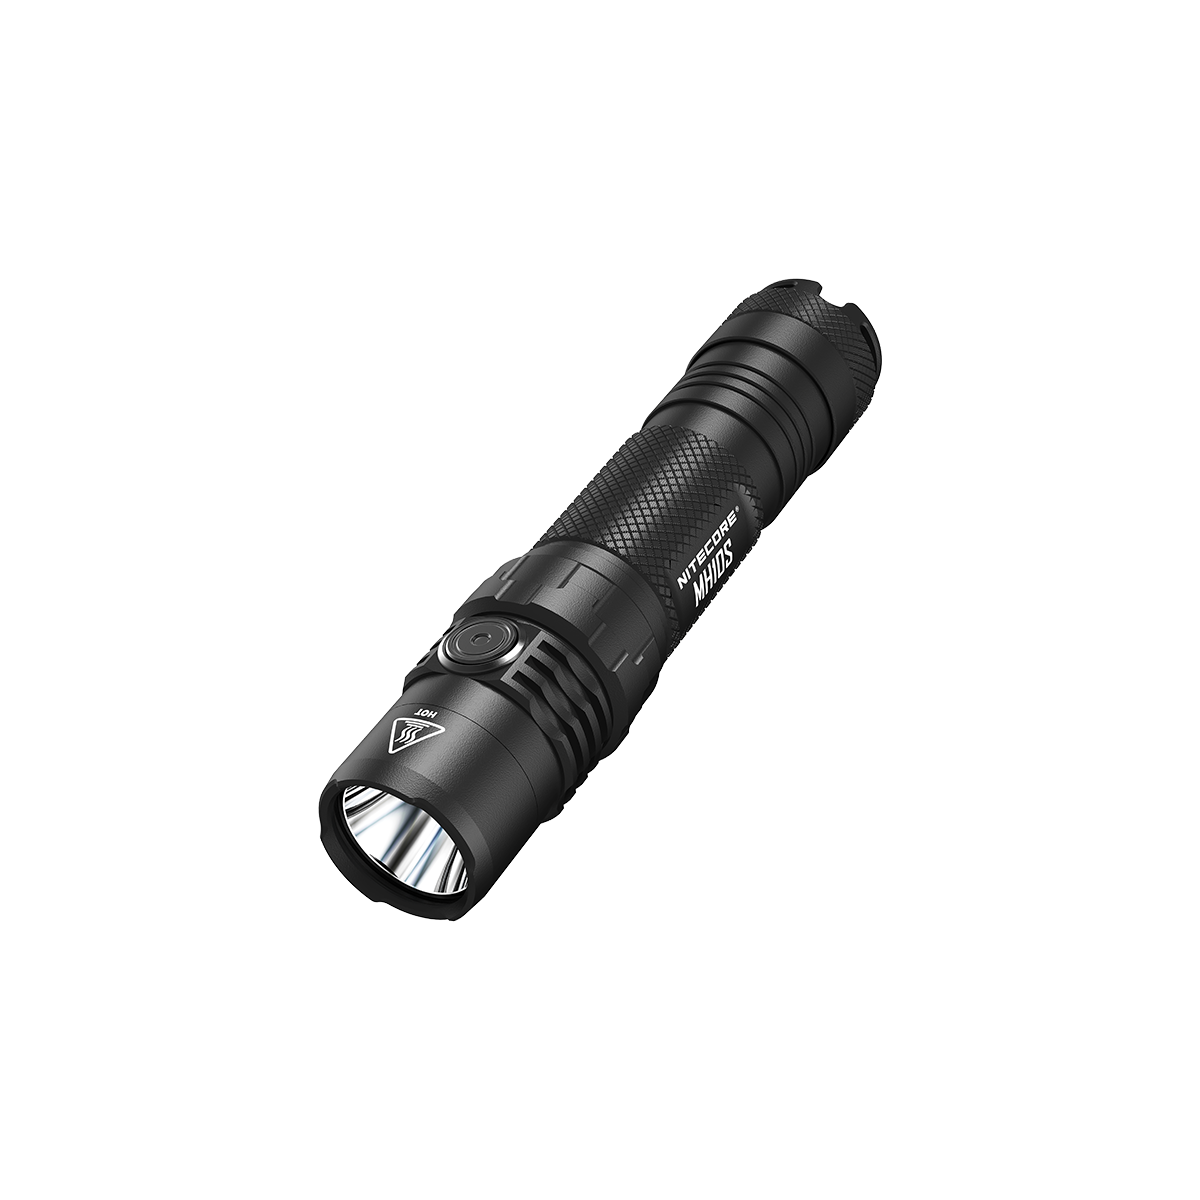 Lampe Torche Nitecore MH25S 1800Lumens rechargeable USB-C batterie